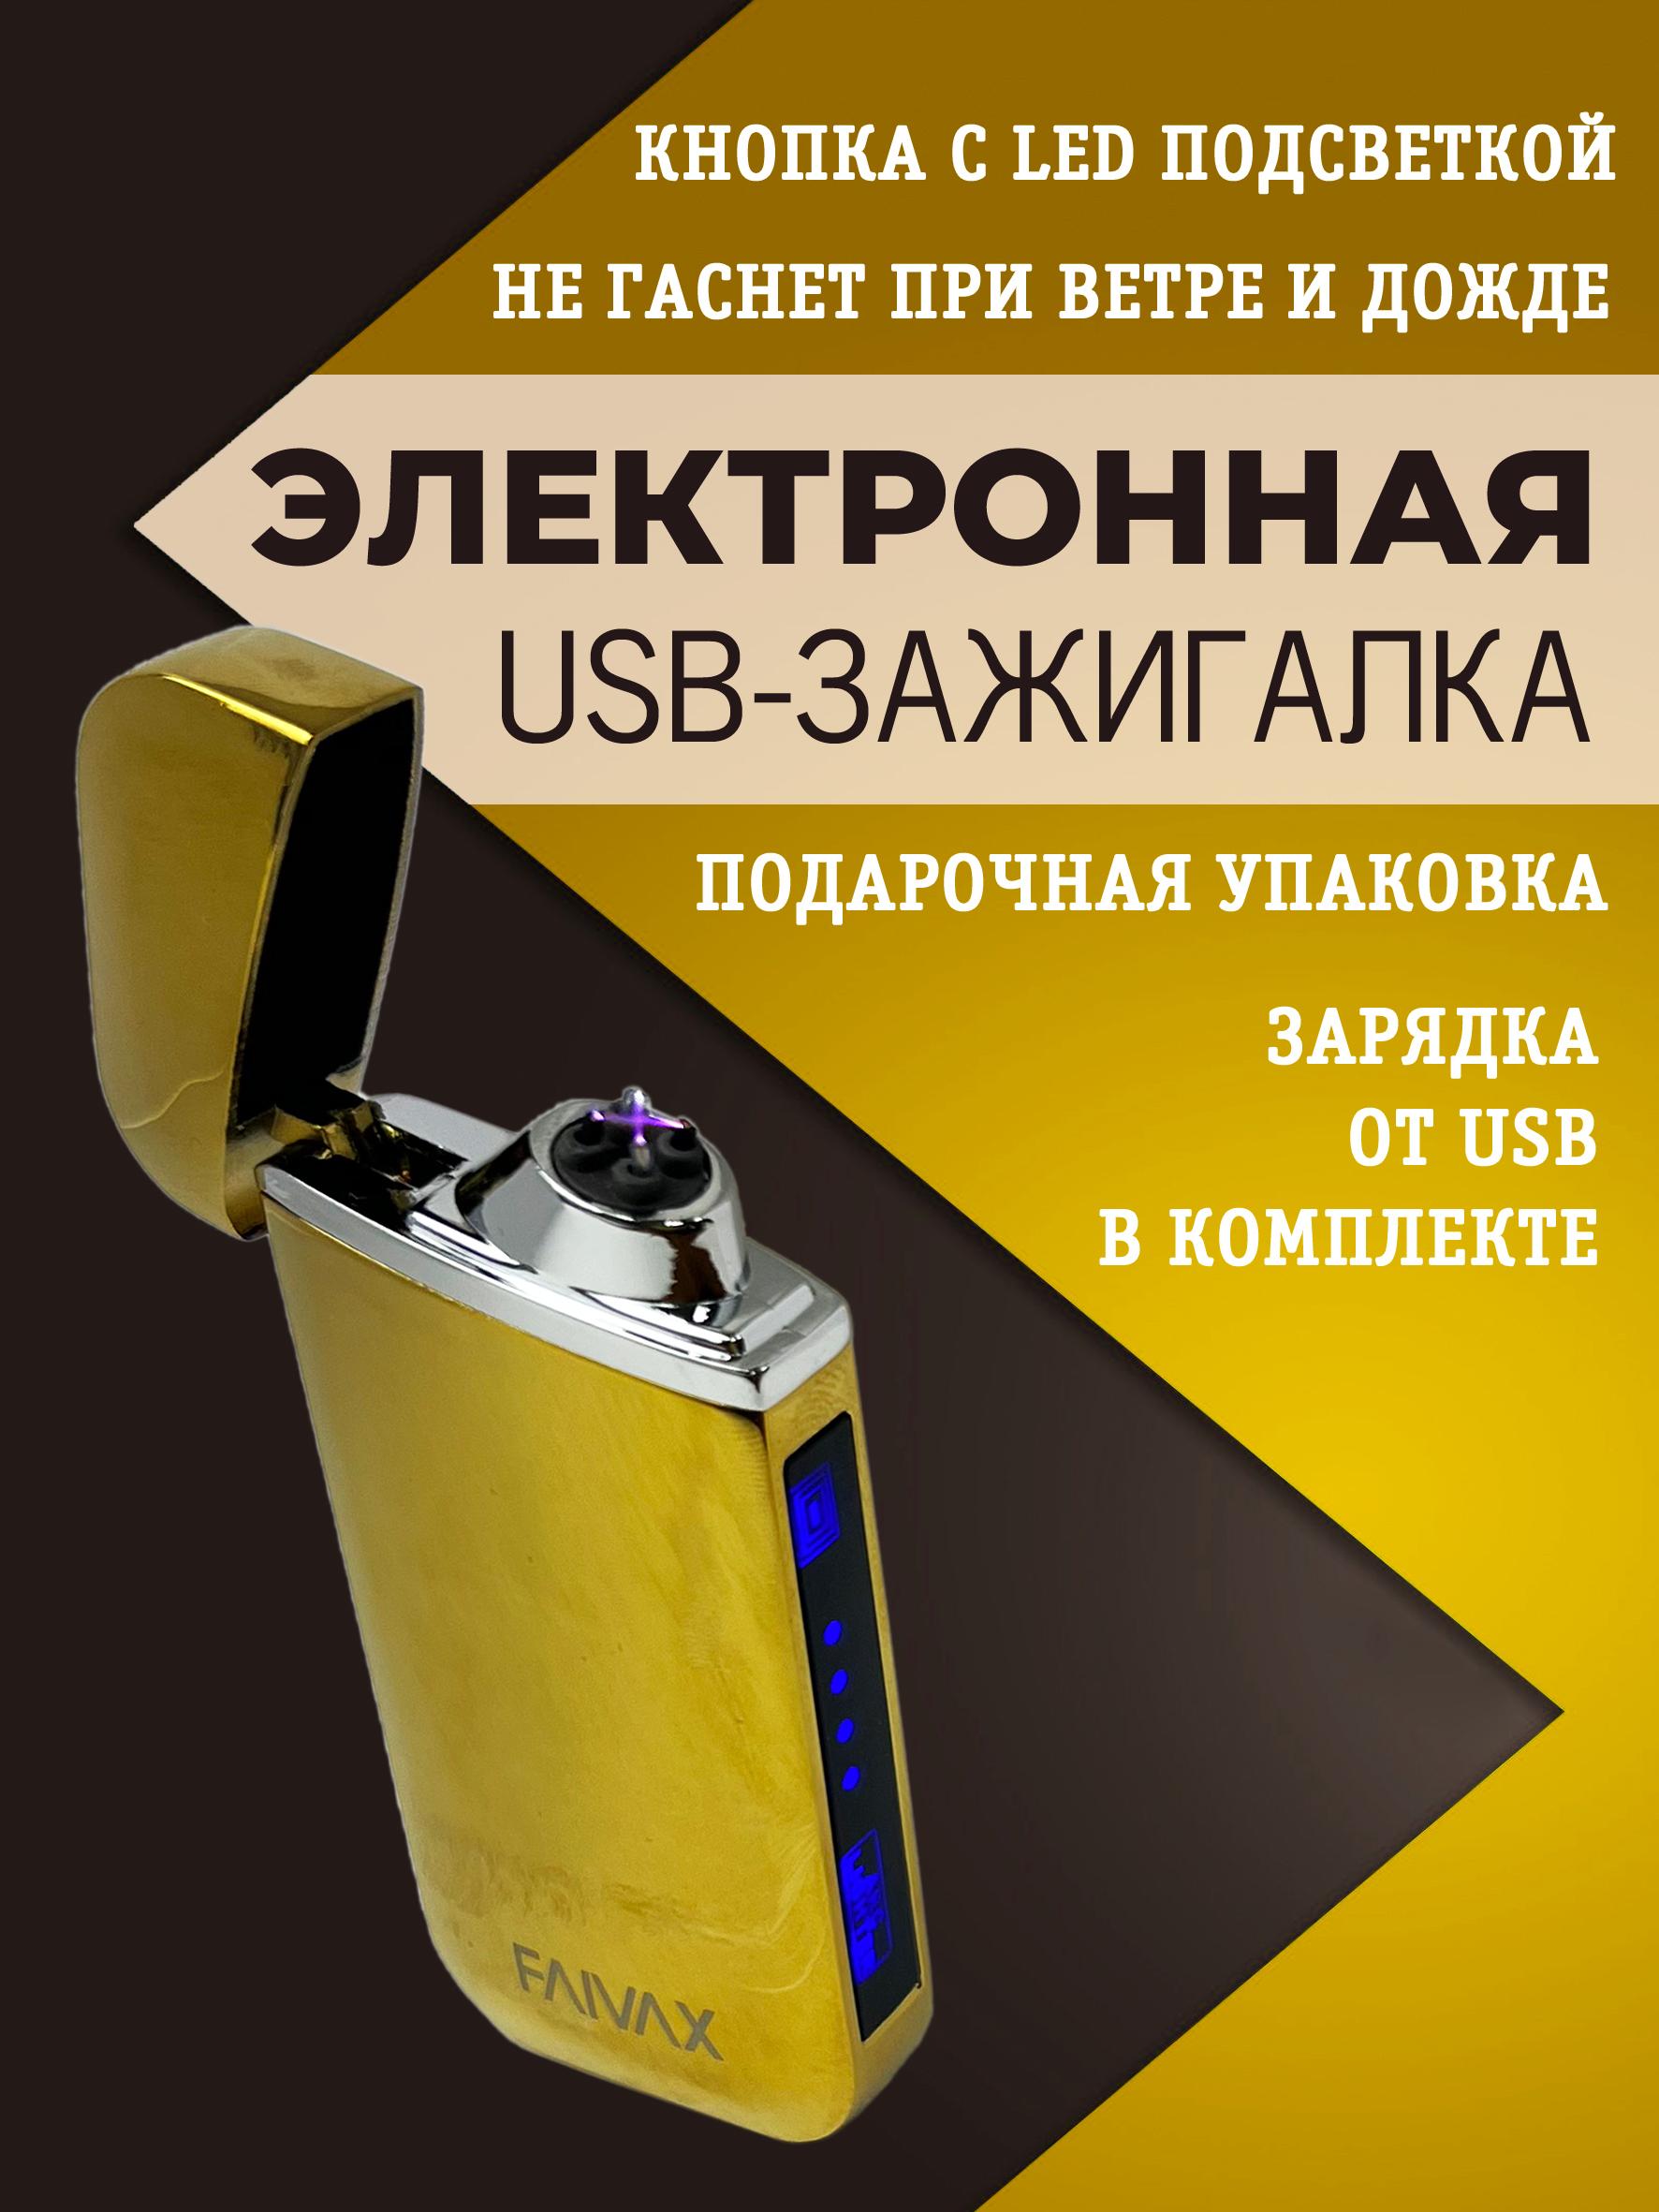 Электронная USB зажигалка FAIVAX, золотая глянцевая